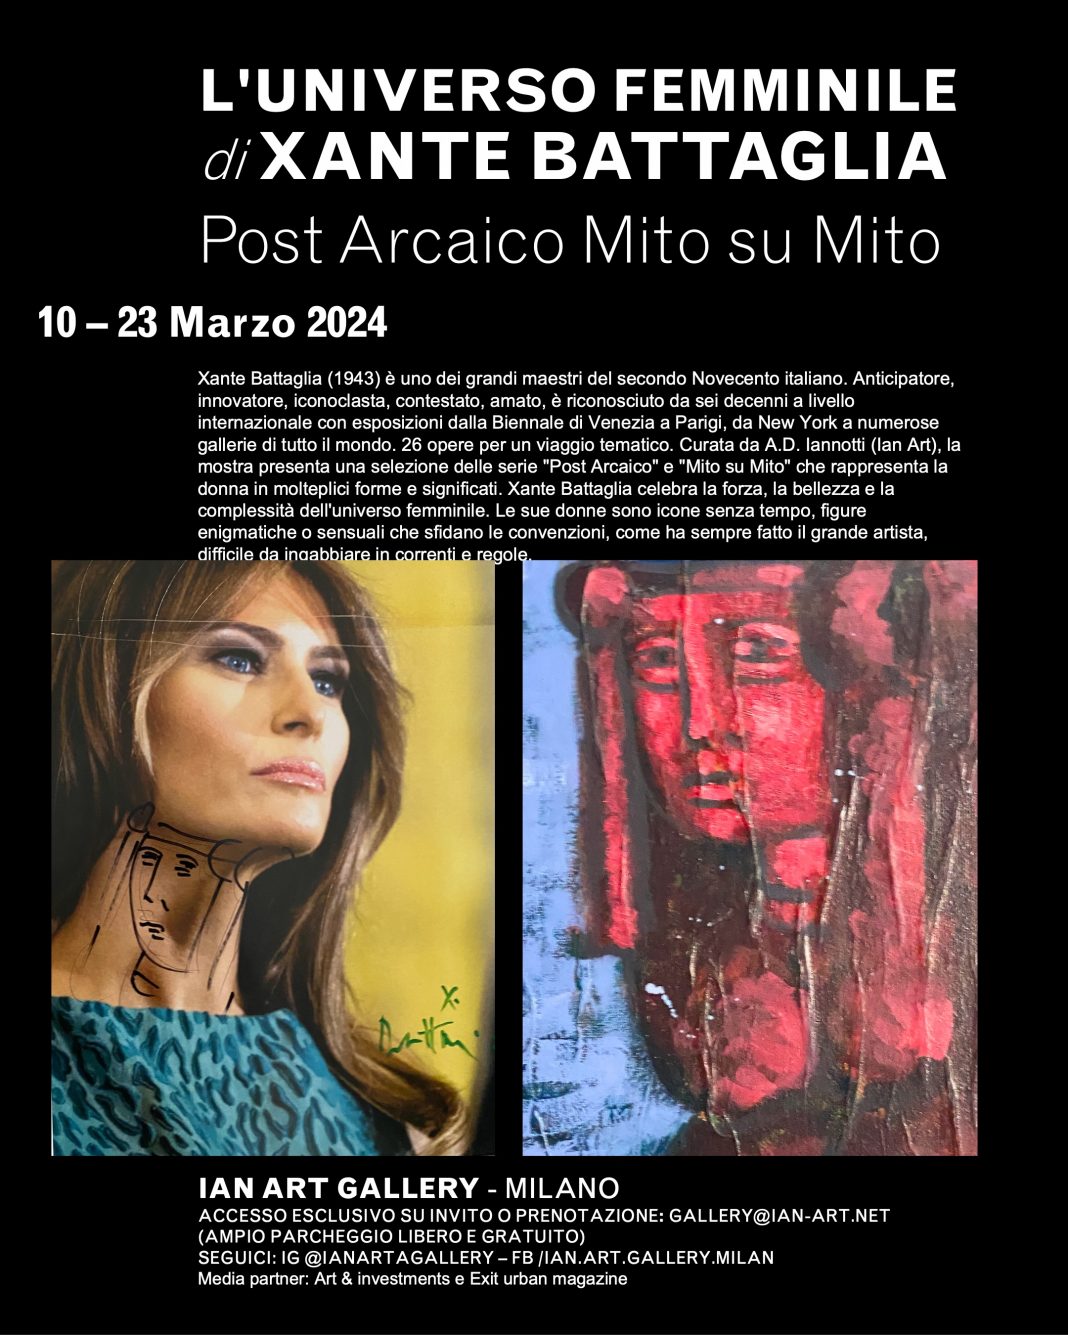 Xante Battaglia – L’Universo Femminile: Post Arcaico Mito su Mitohttps://www.exibart.com/repository/media/formidable/11/img/bf0/IAG-240306-mostra-XANTE-BATTAGLIA-INSTAGRAM_ITA-1068x1335.jpg